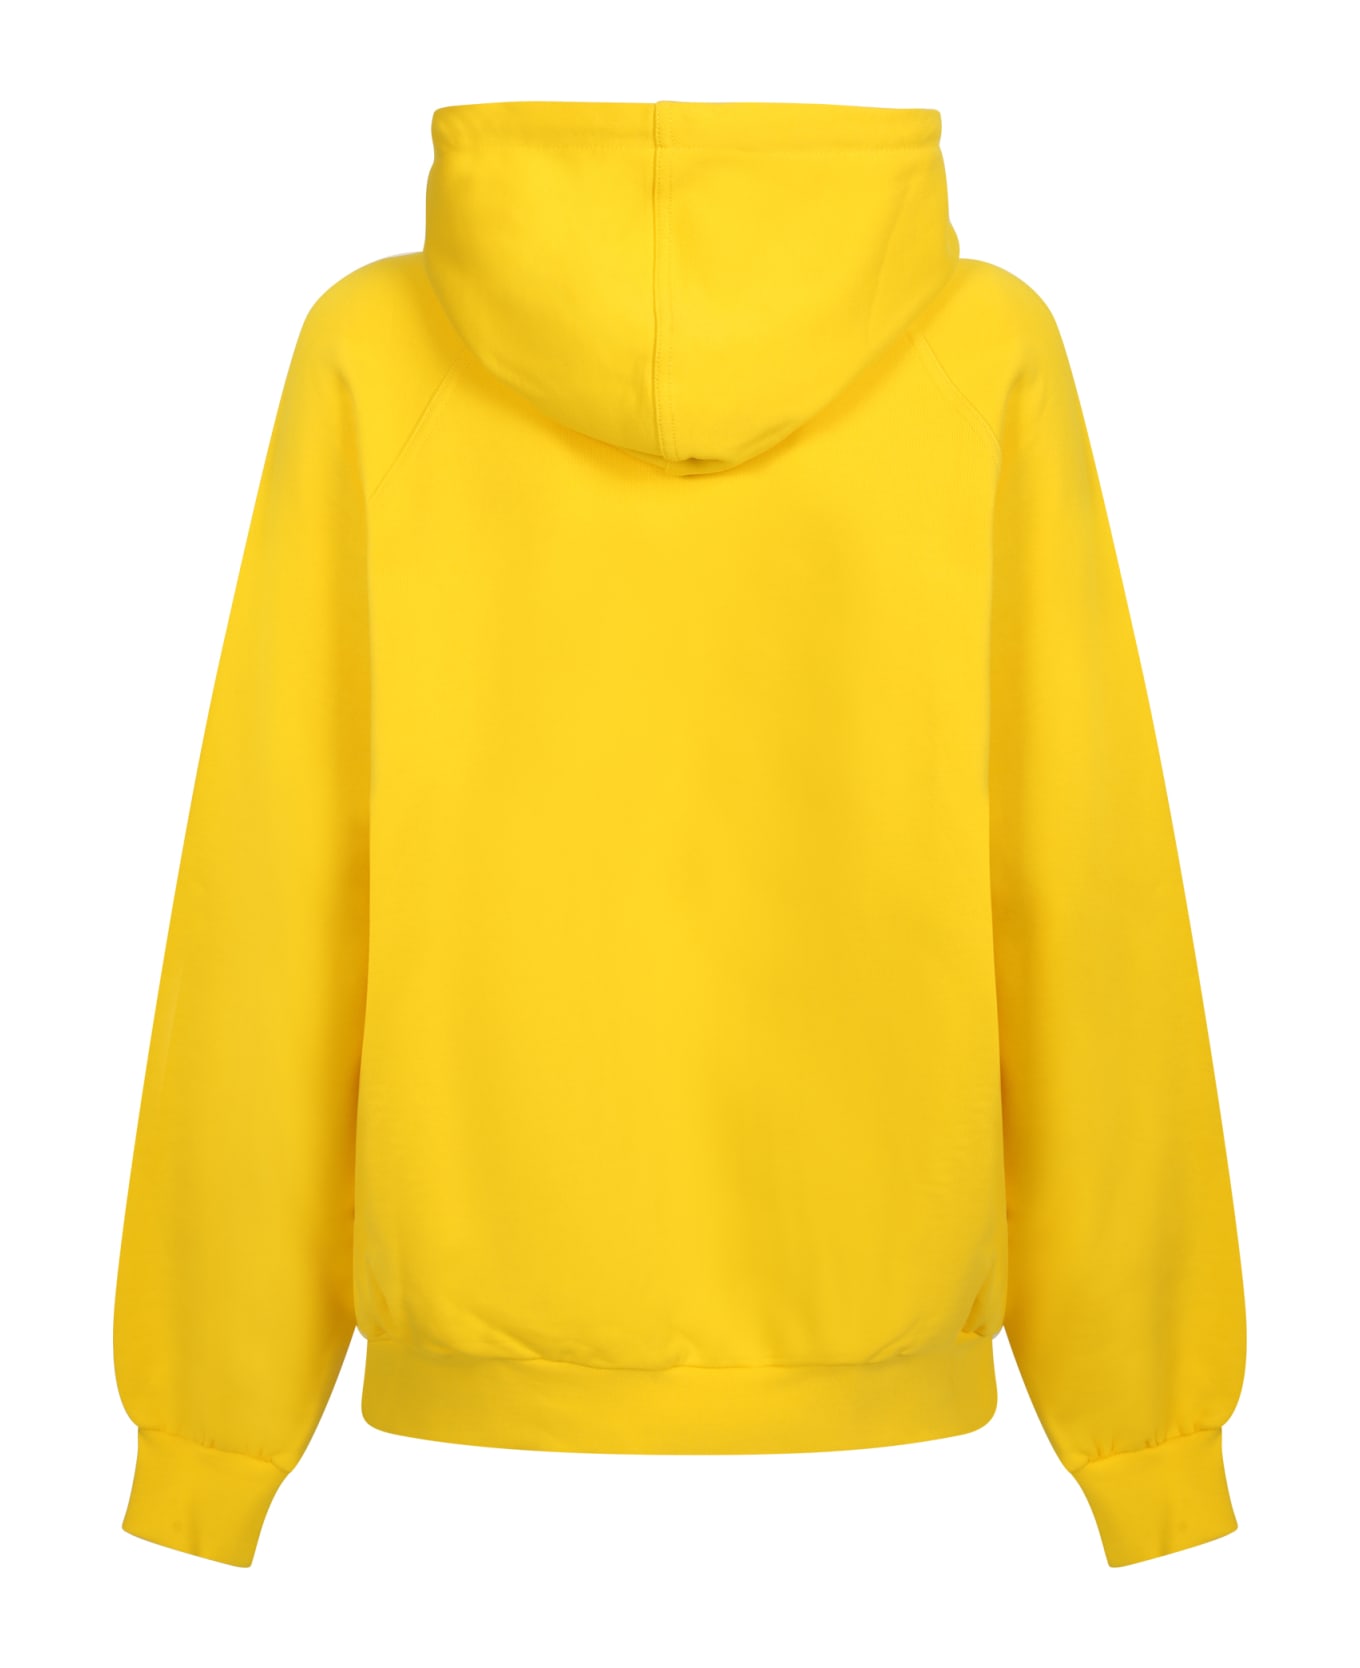 Sunnei Yellow Cotton Hood - Yellow